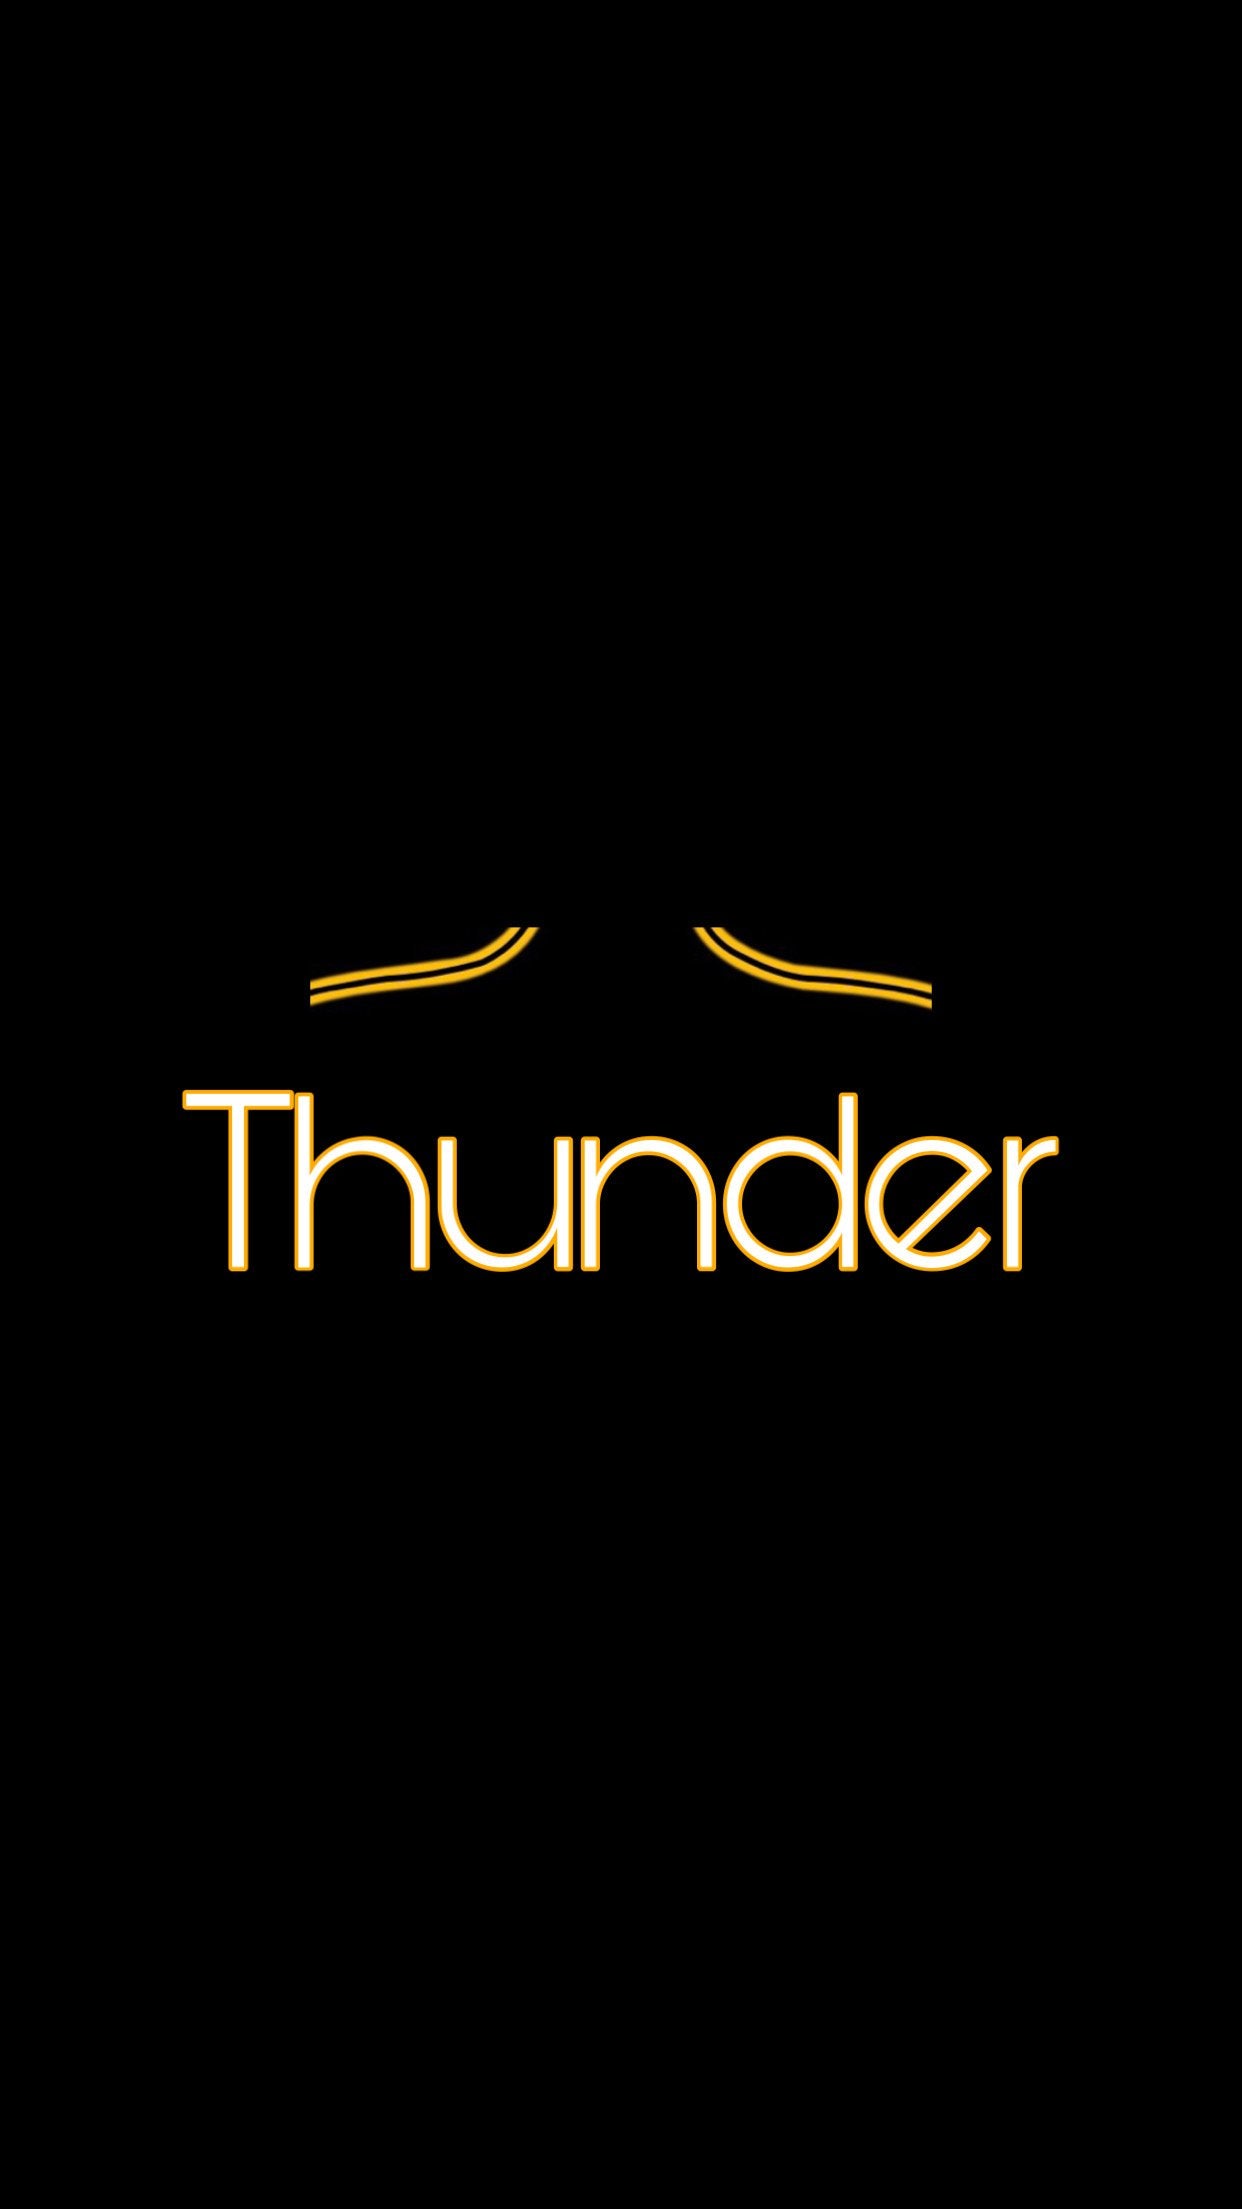 Thunderbird Card